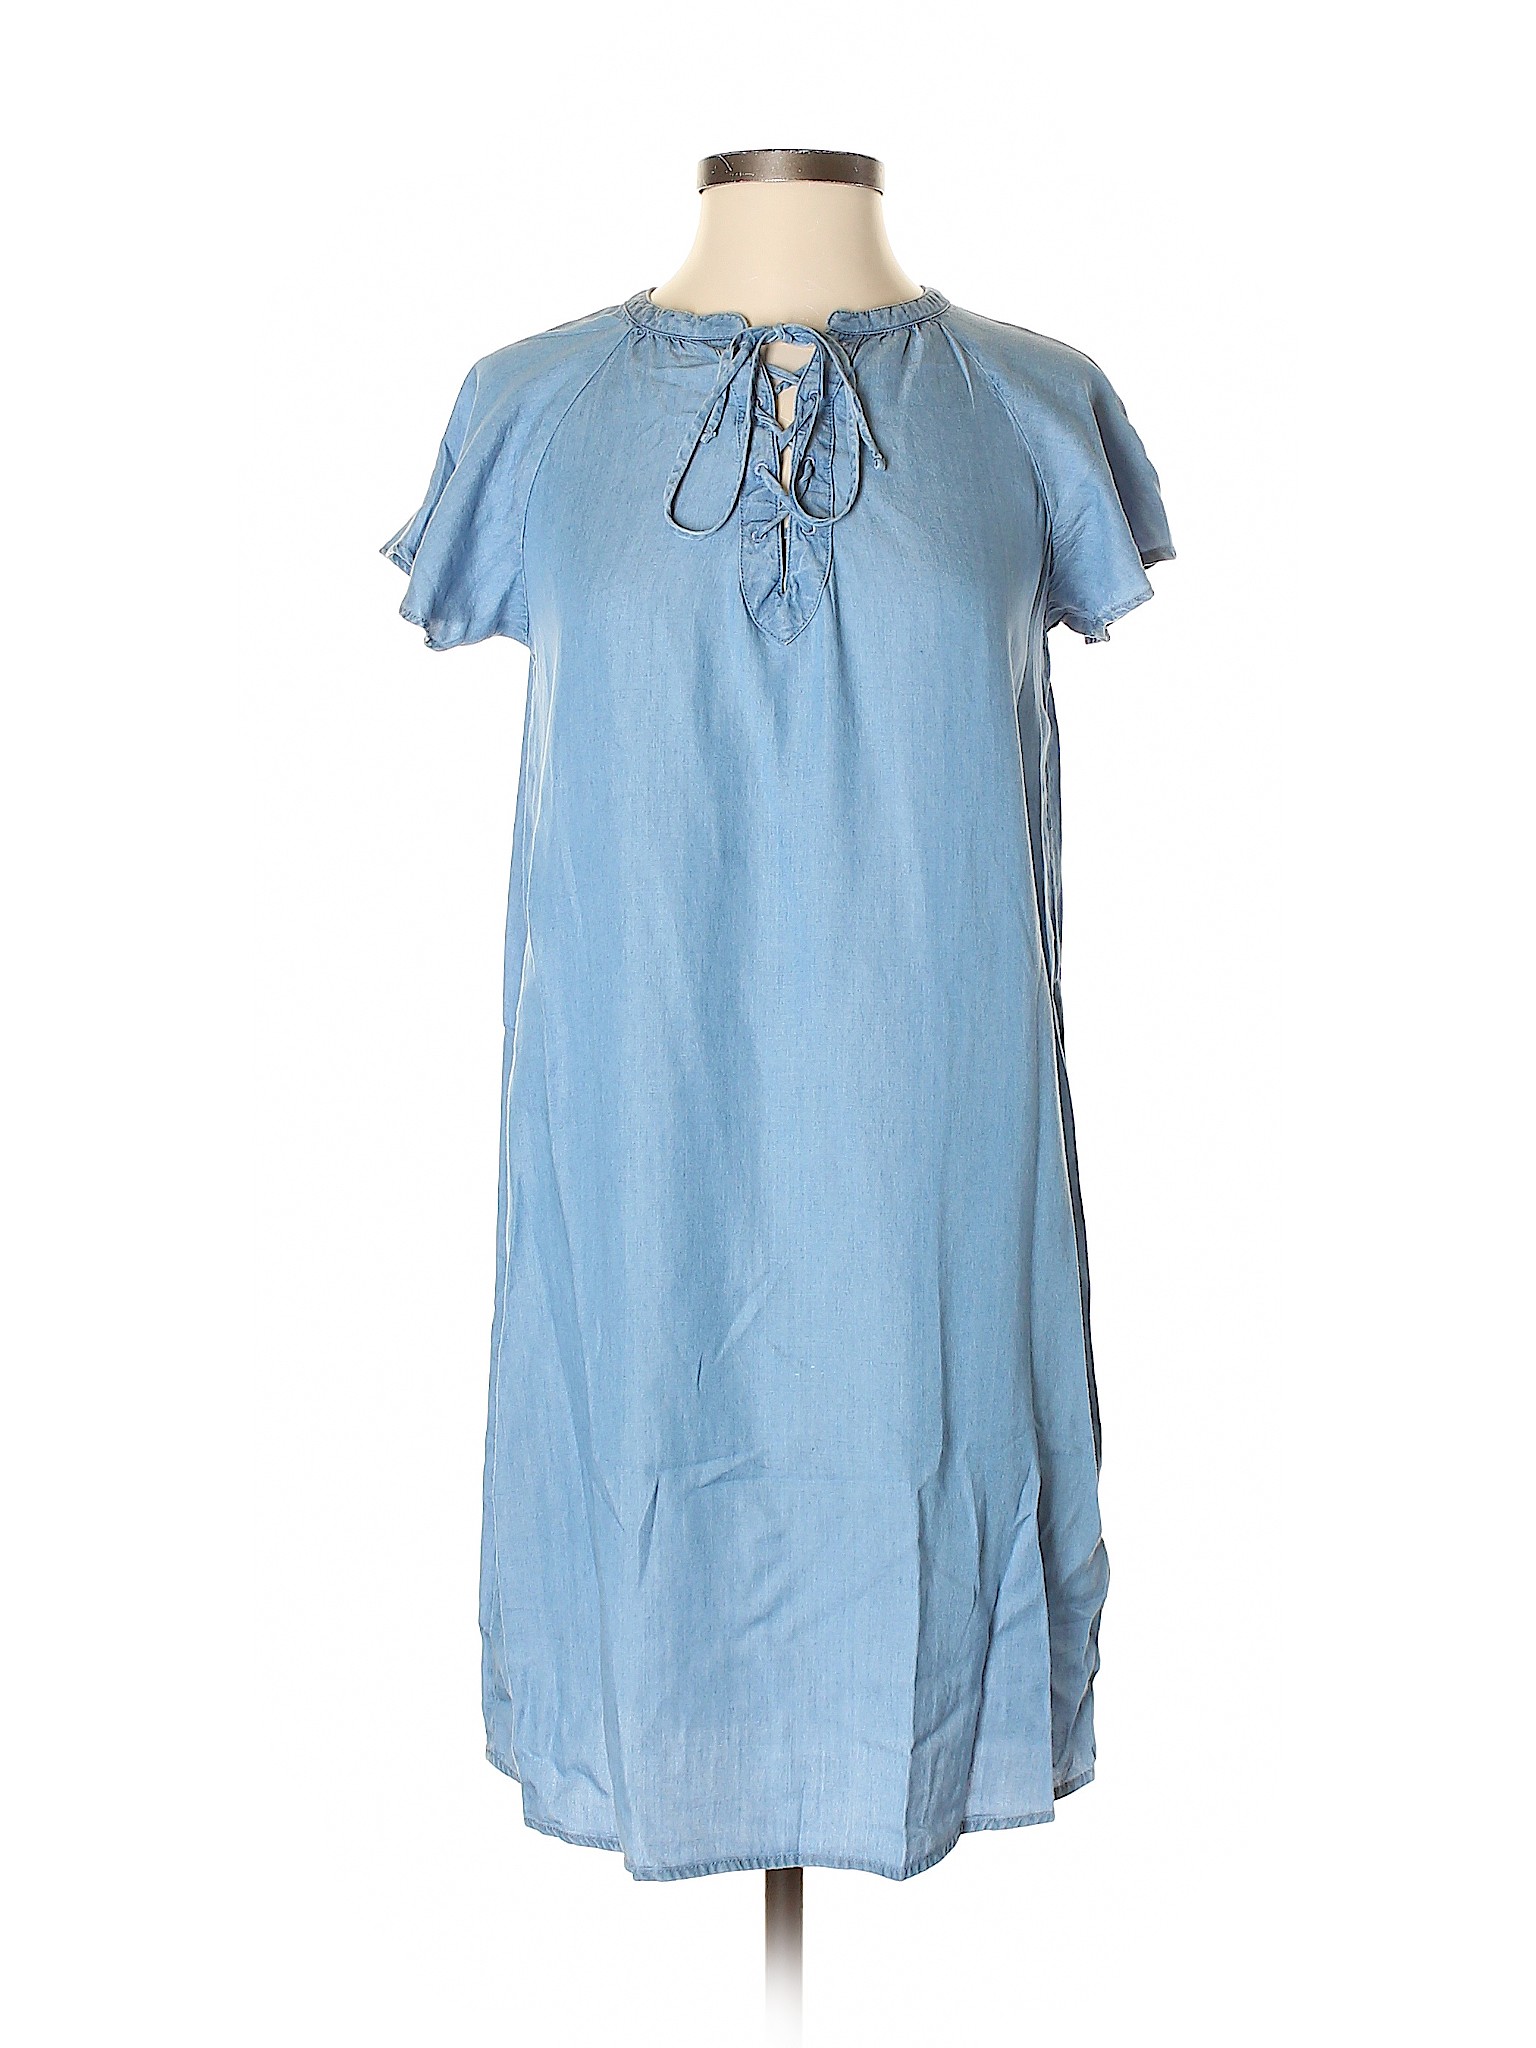 Old Navy Women Blue Casual Dress XS | eBay